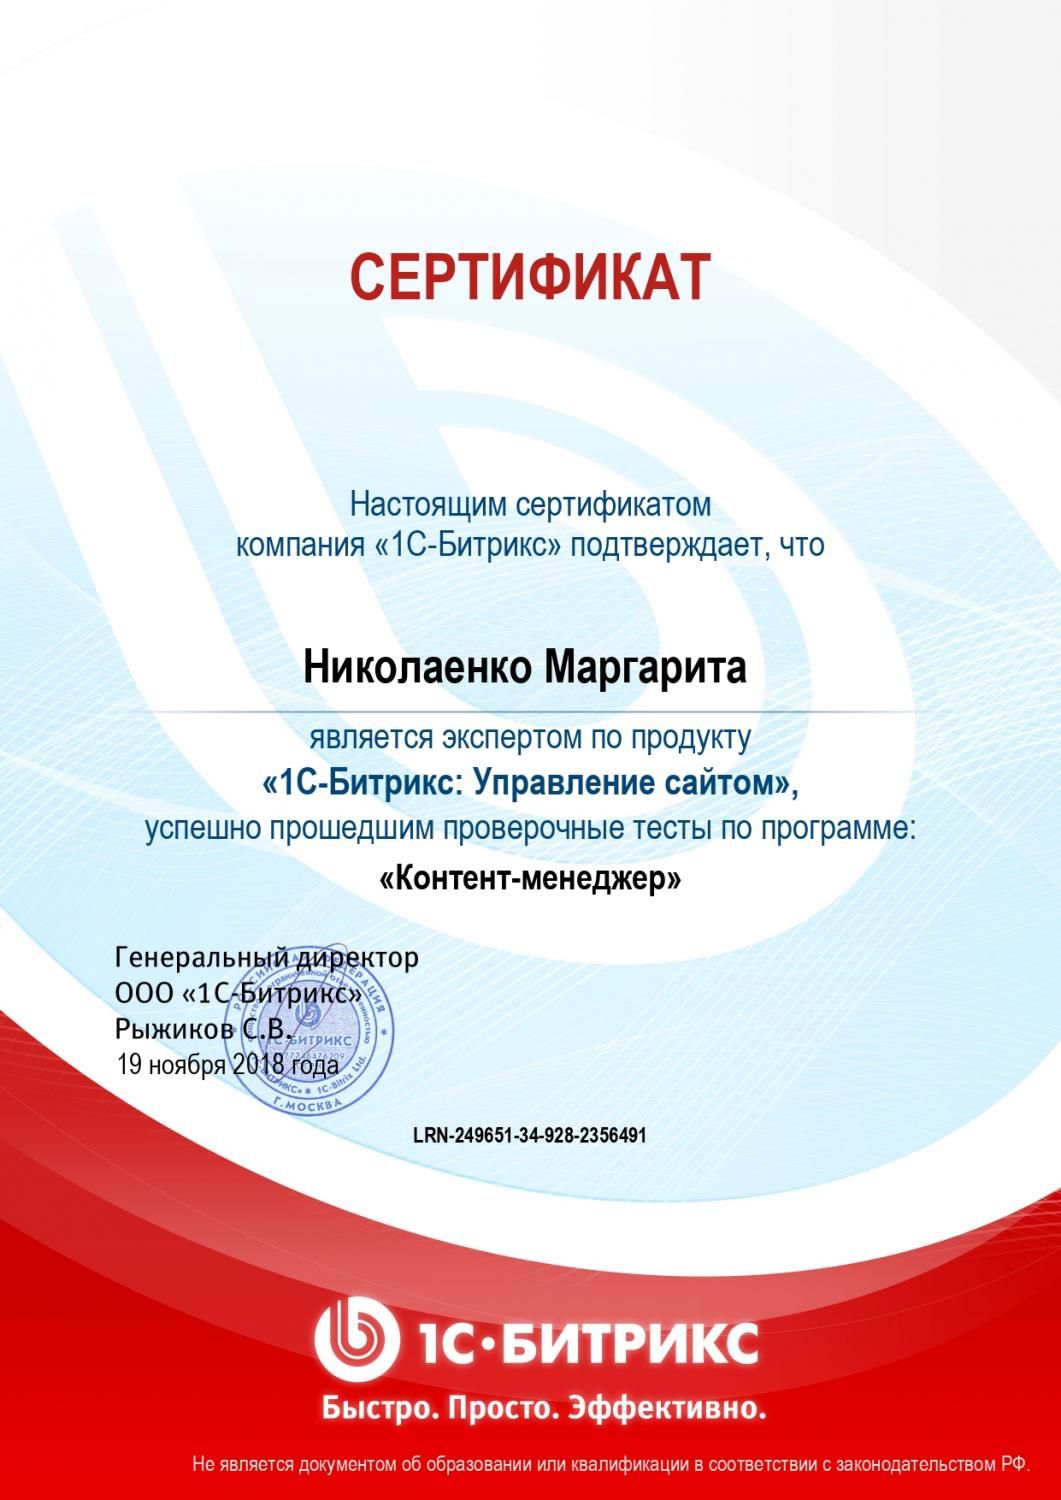 Сертификат эксперта по программе "Контент-менеджер" - Николаенко М. в Самары